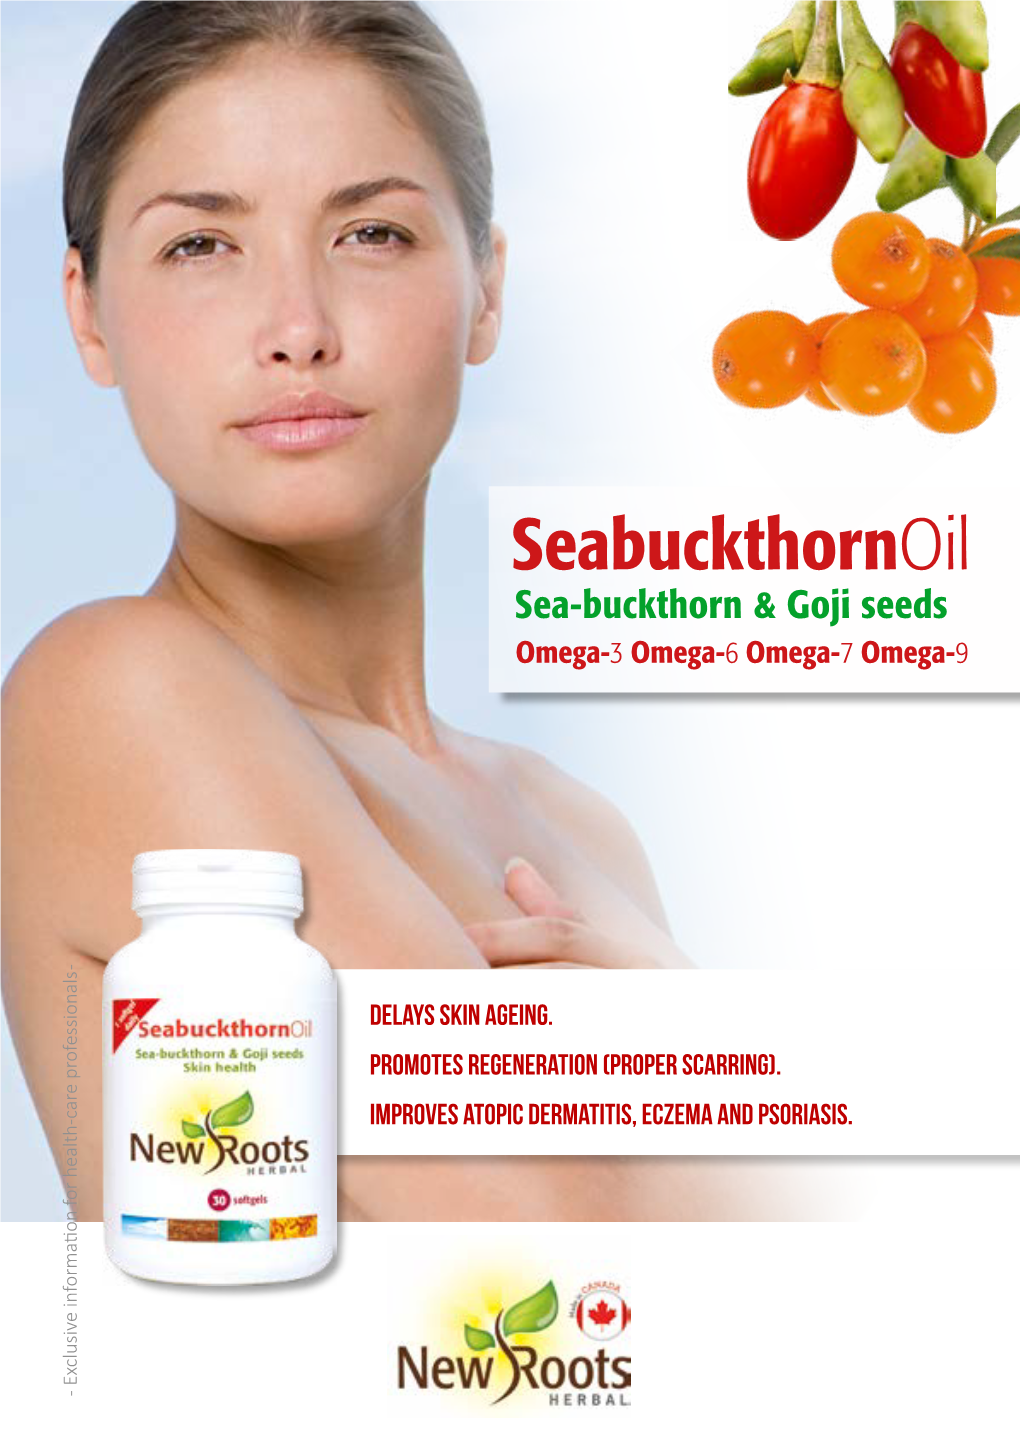 Seabuckthornoil Sea-Buckthorn & Goji Seeds Omega-3 Omega-6 Omega-7 Omega-9